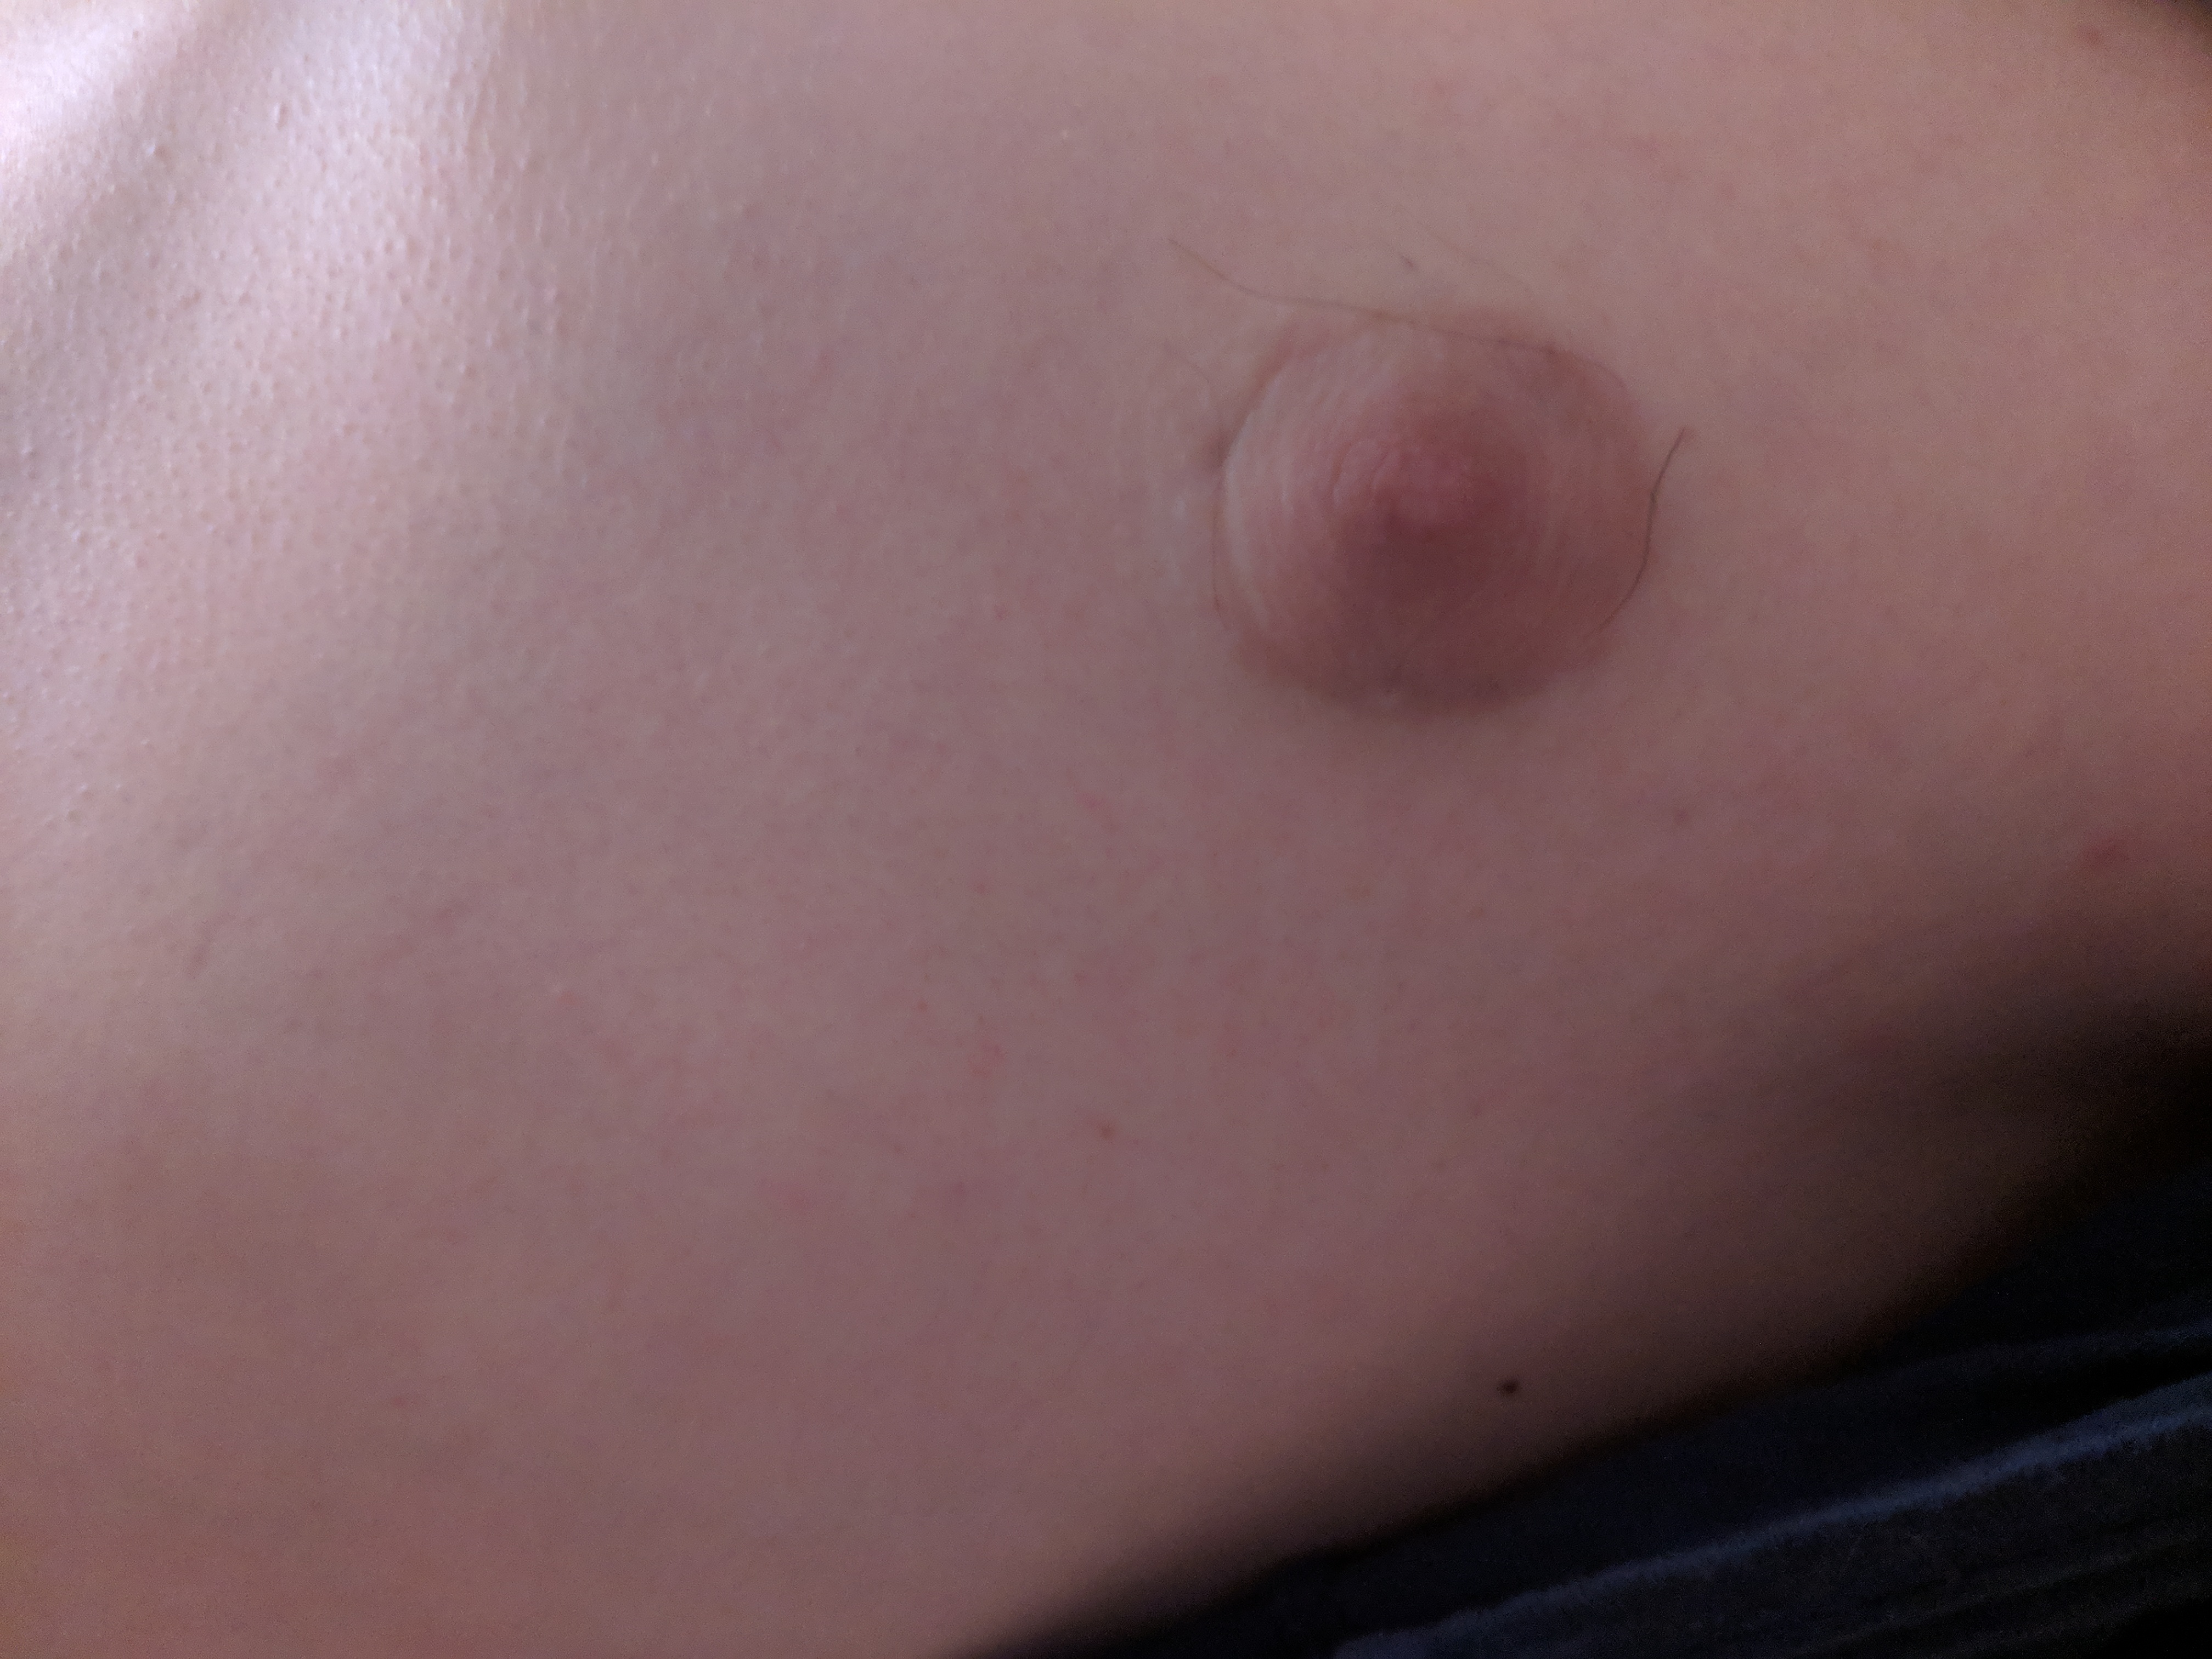 уплотнение на груди слева у мужчин фото 49